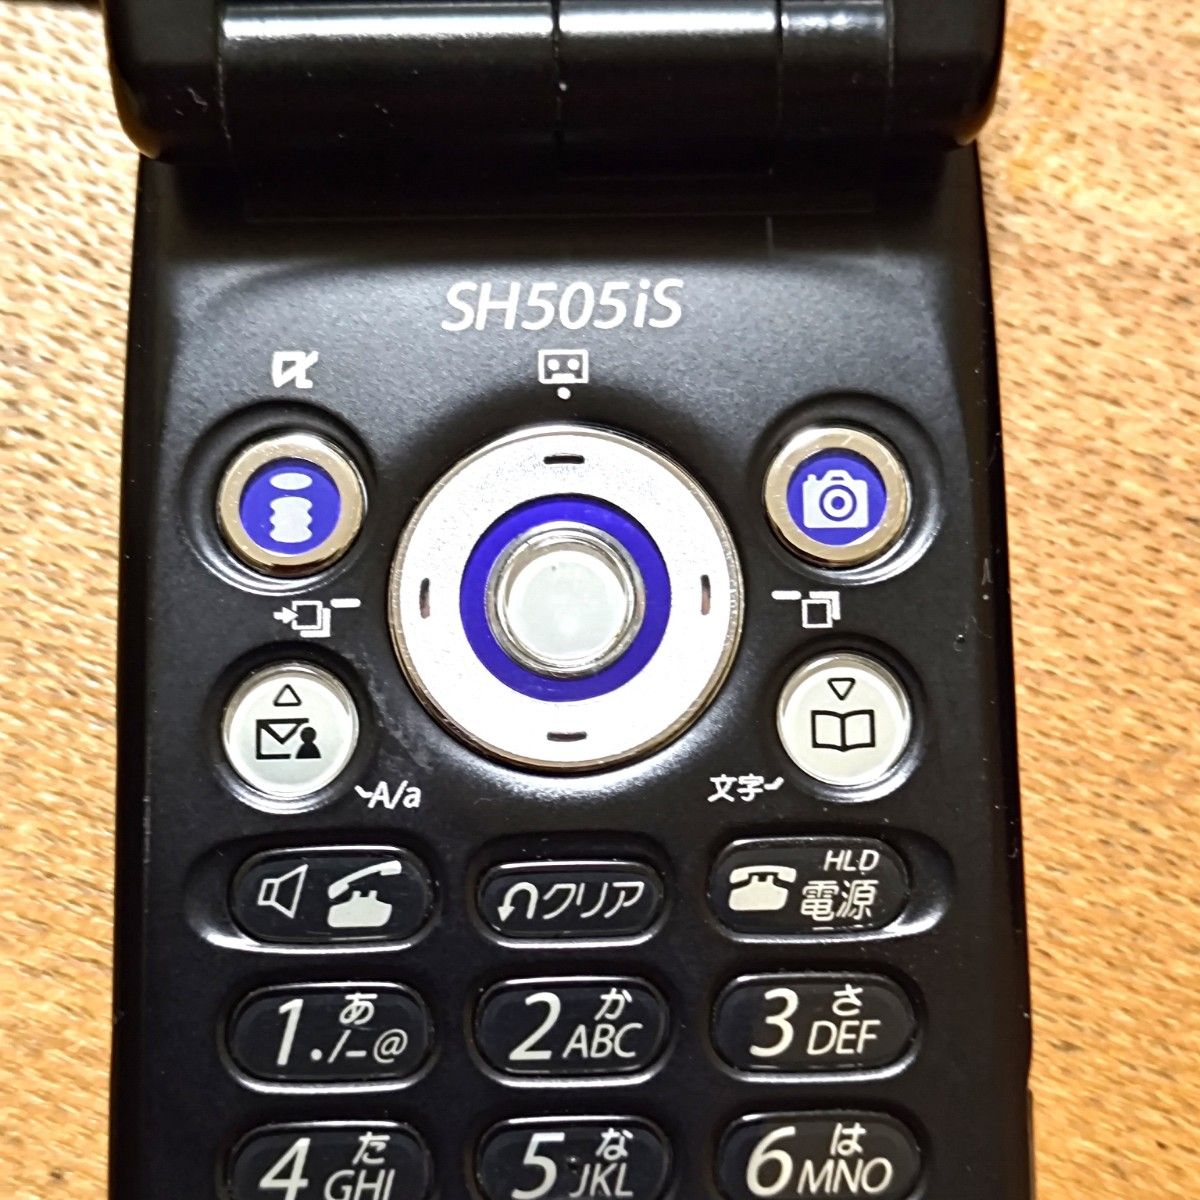 ドコモ docomo フィーチャーフォン SH505is ブラック silver ガラケー mova 携帯電話 携帯 です。